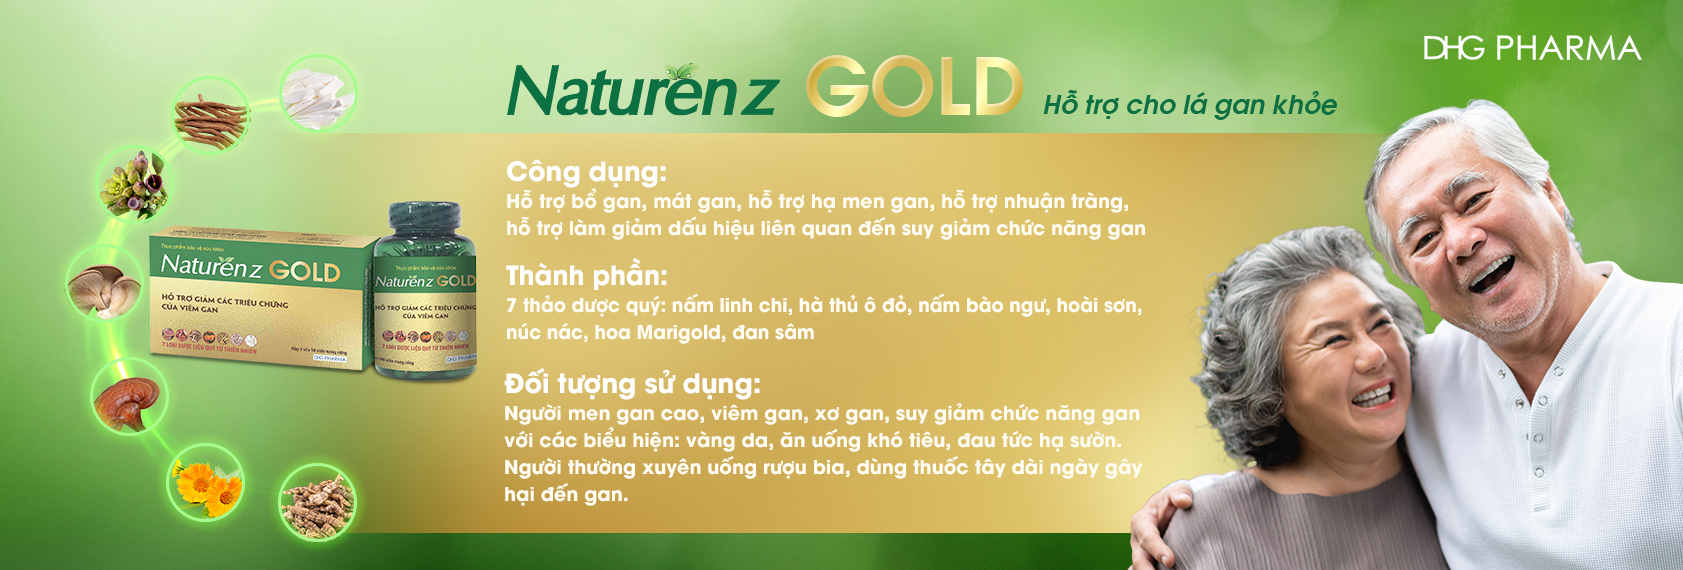 Naturenz Gold